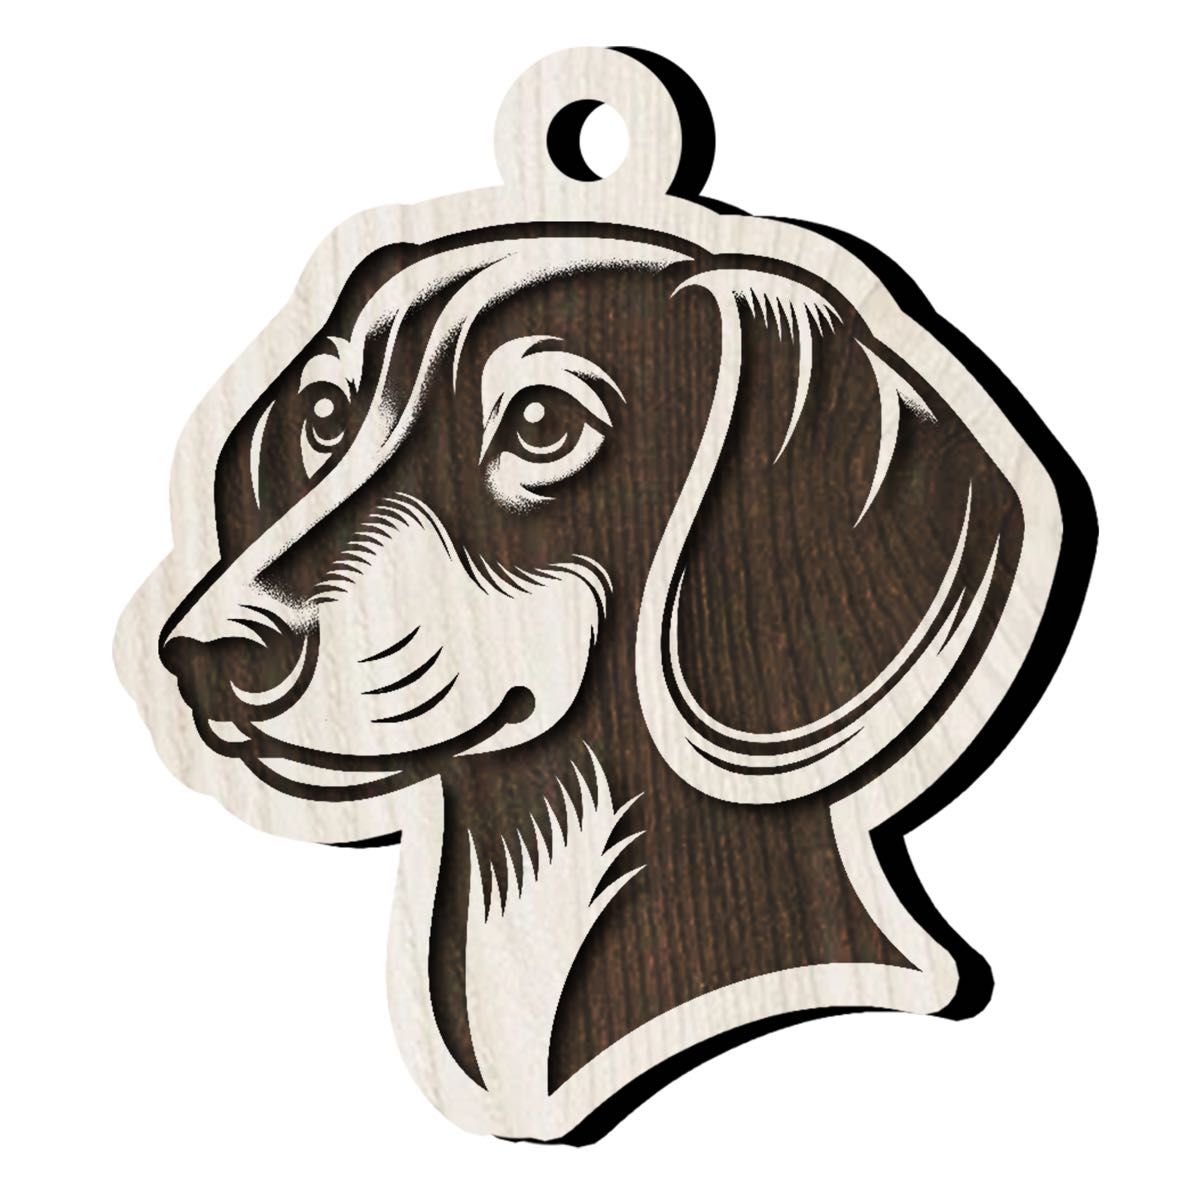 ドッグストラップ (ダックスフンド)  細工 彫刻 犬 ドッグ dog 雑貨